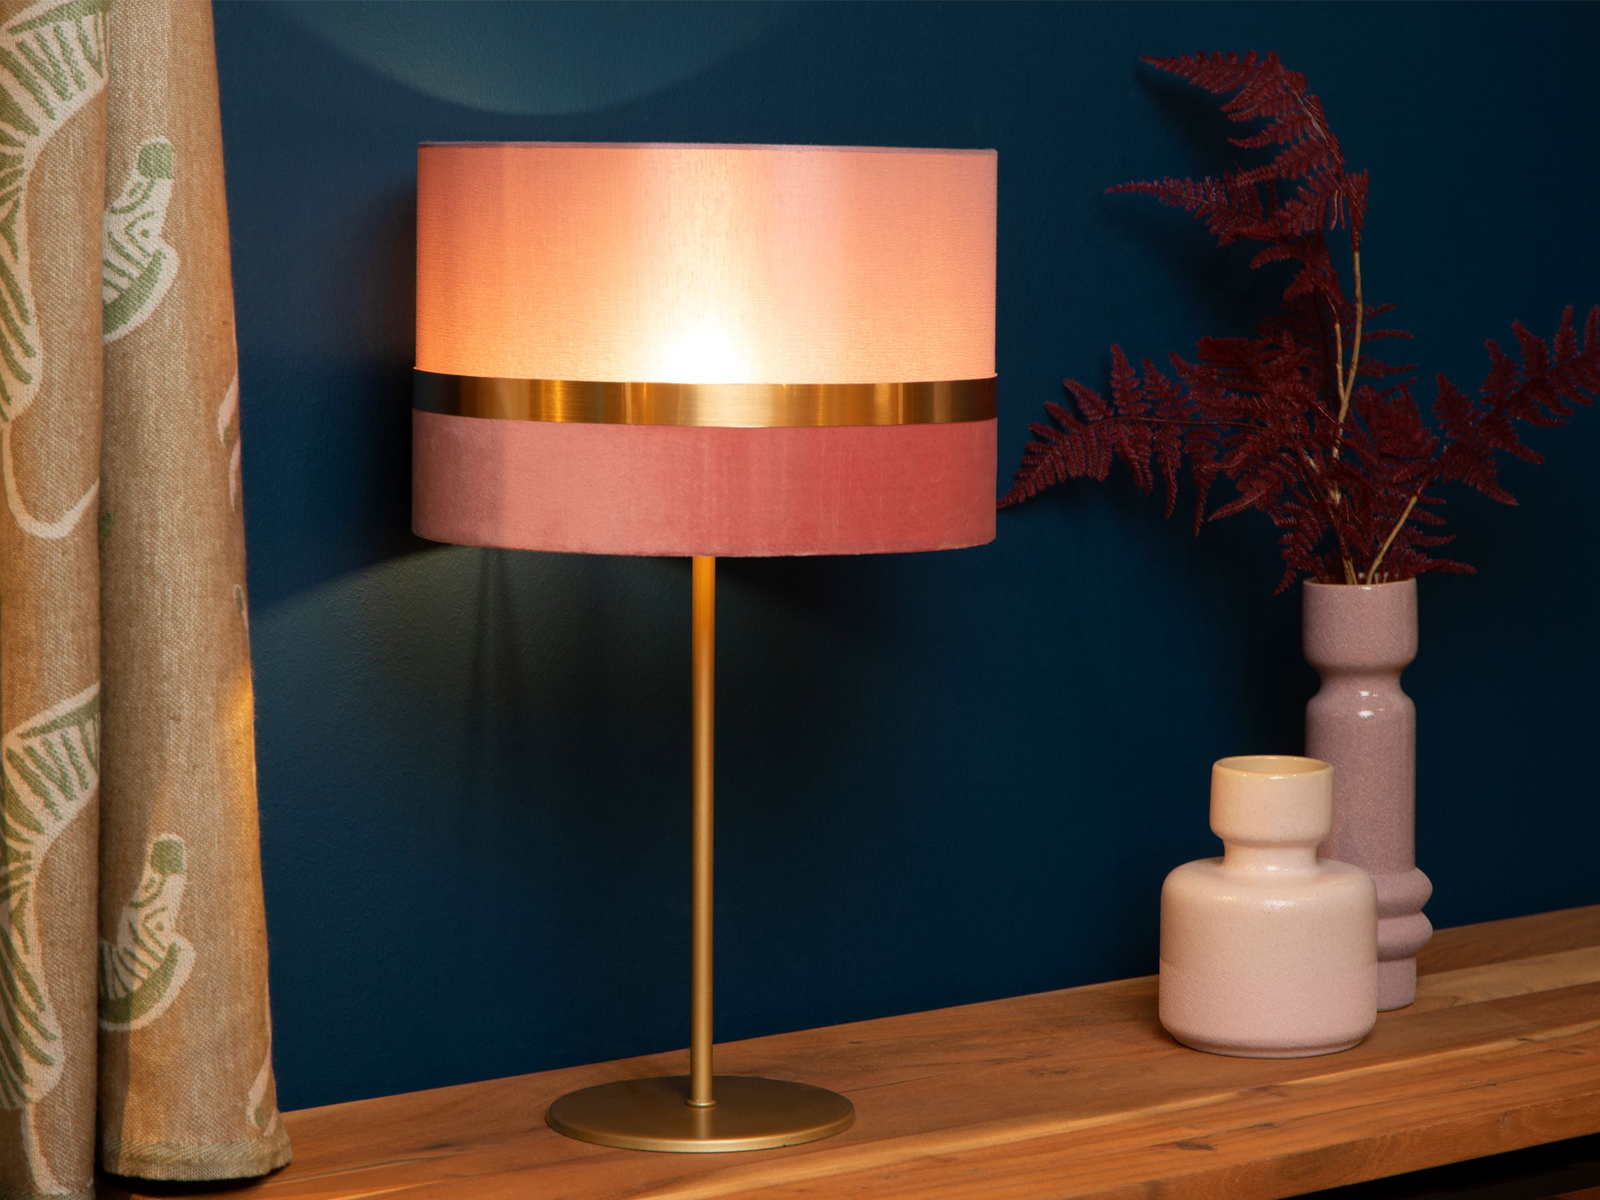 Stolní lampa Extravaganza Tusse, růžová, E14, 50cm